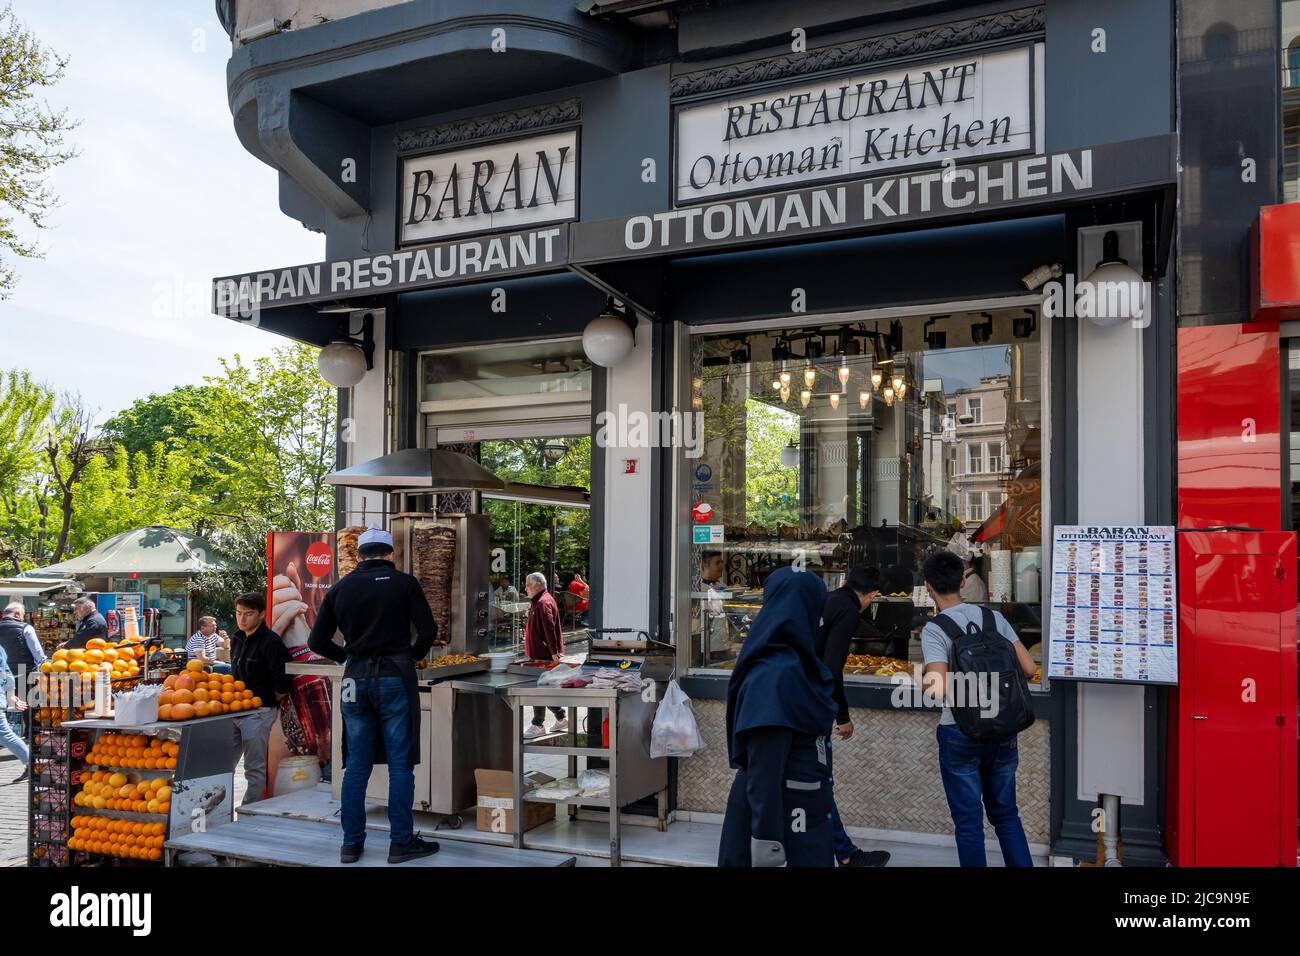 Restaurante y puesto de comida callejero. Estambul, Türkiye. Foto de stock